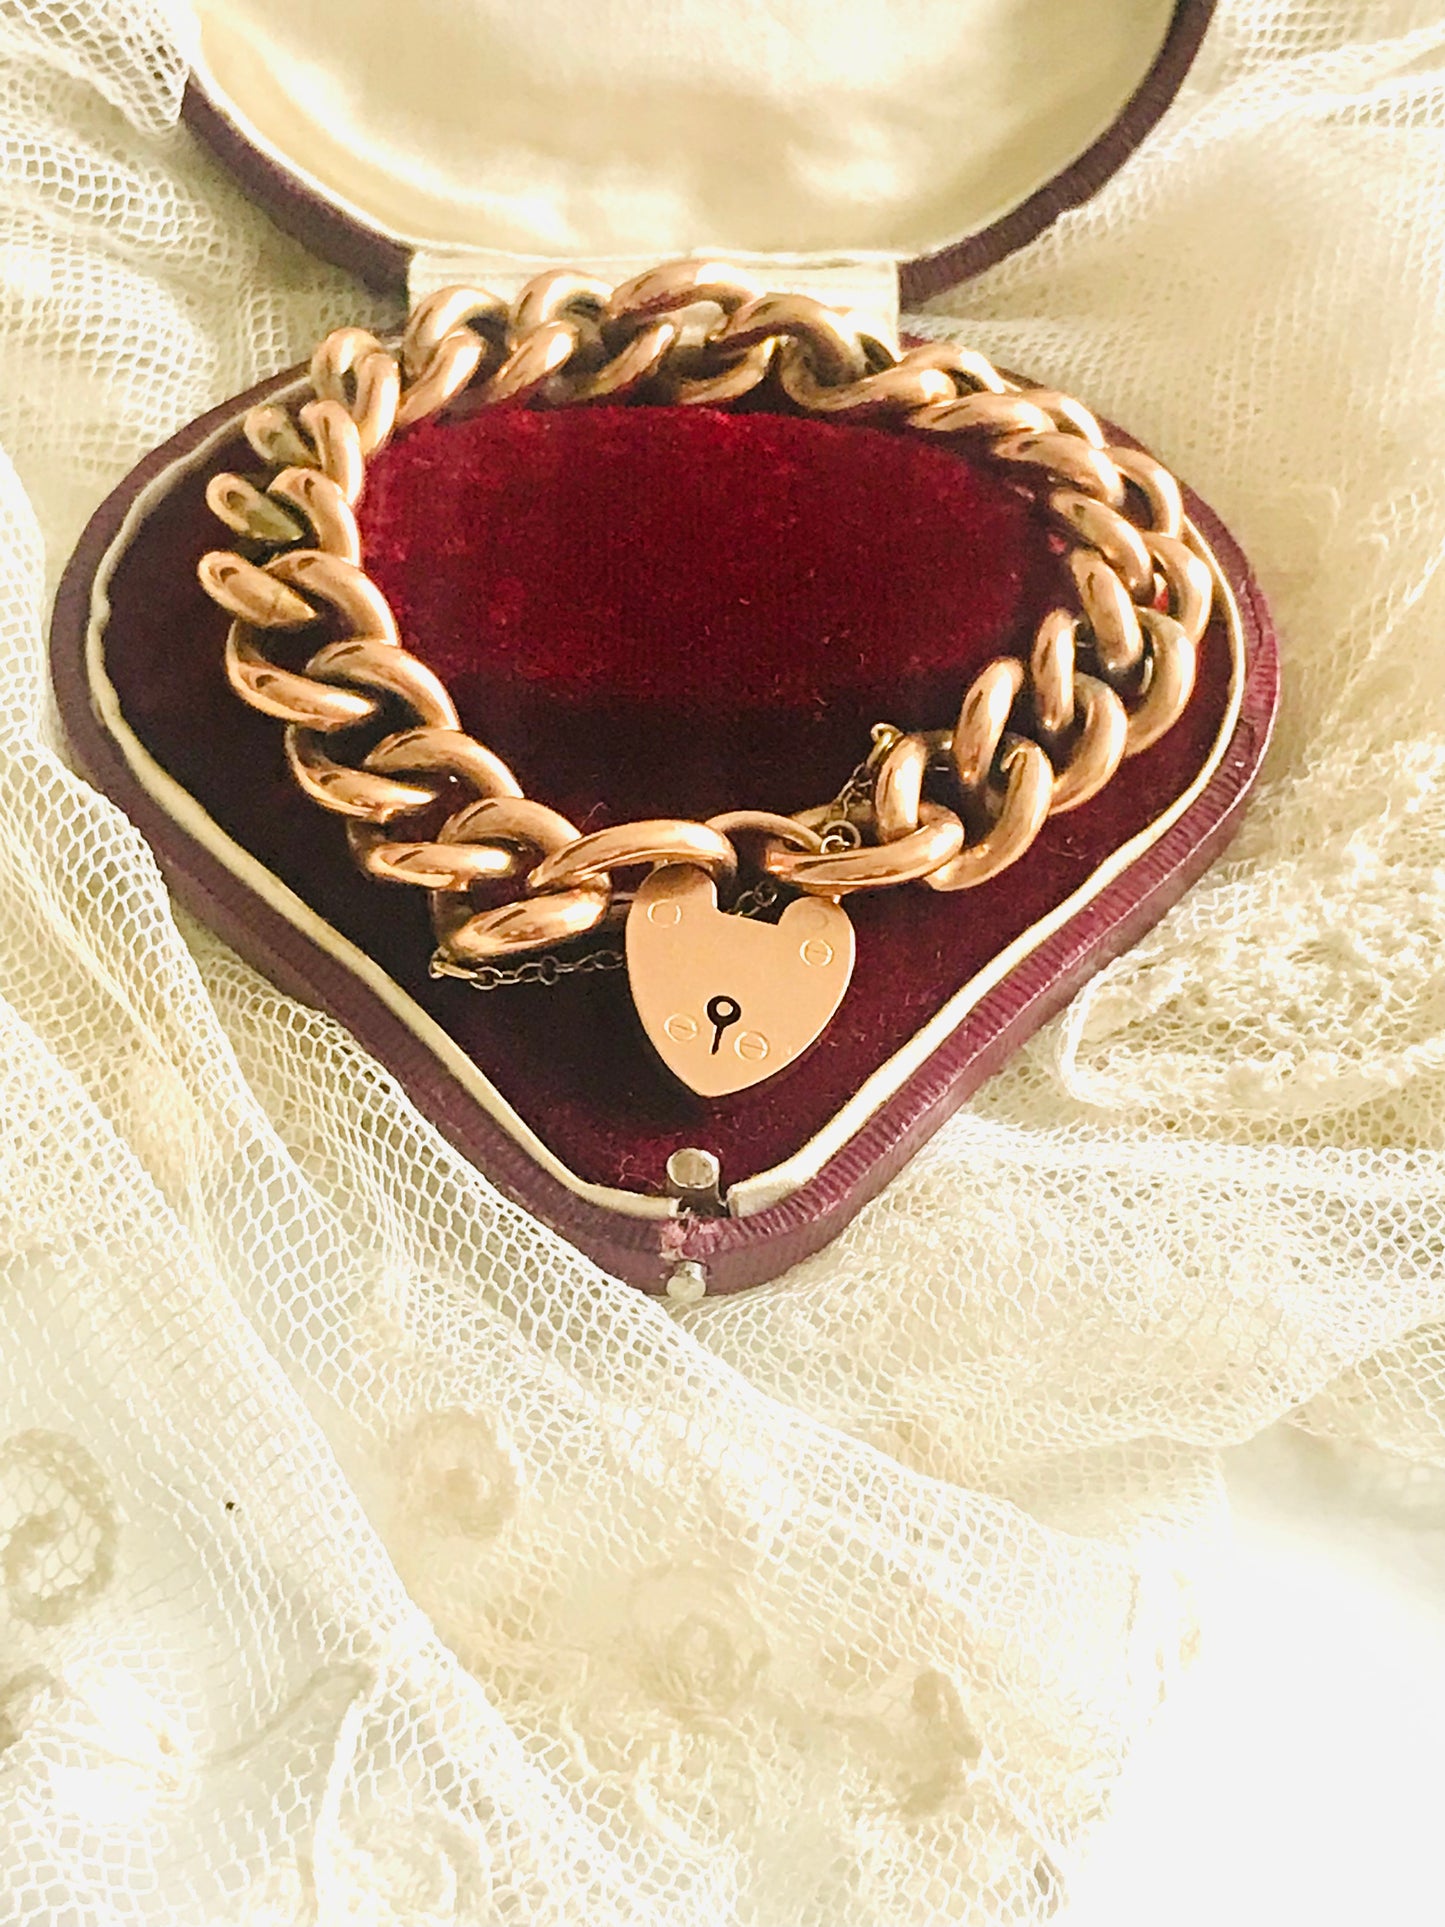 Klobiges Damen-Charmarmband aus 9-karätigem Gold in der originalen roten herzförmigen Box